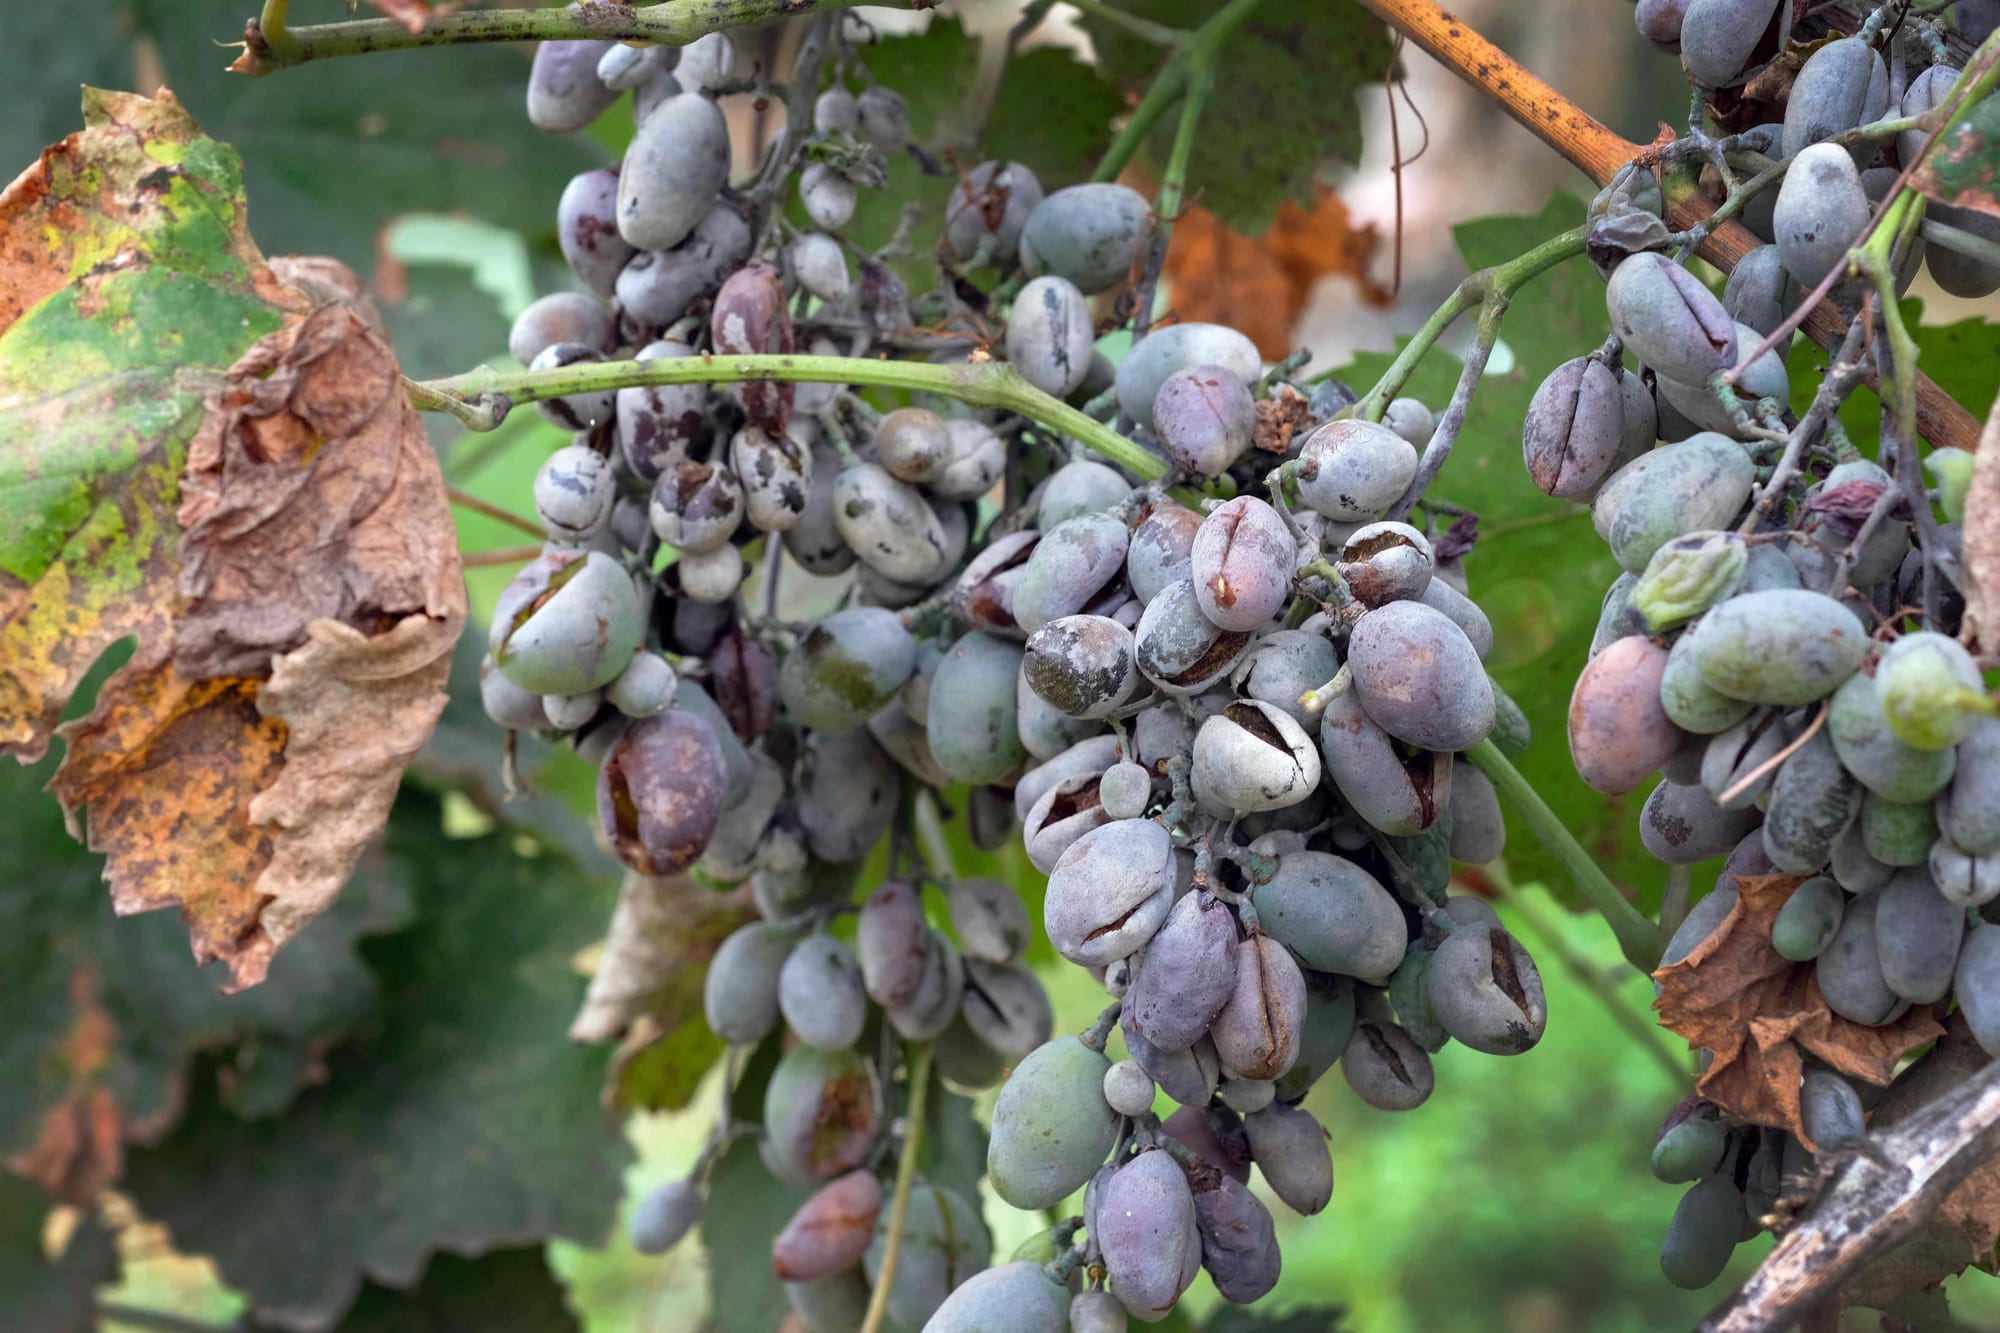 Comment lutter contre l’Oïdium de la vigne?